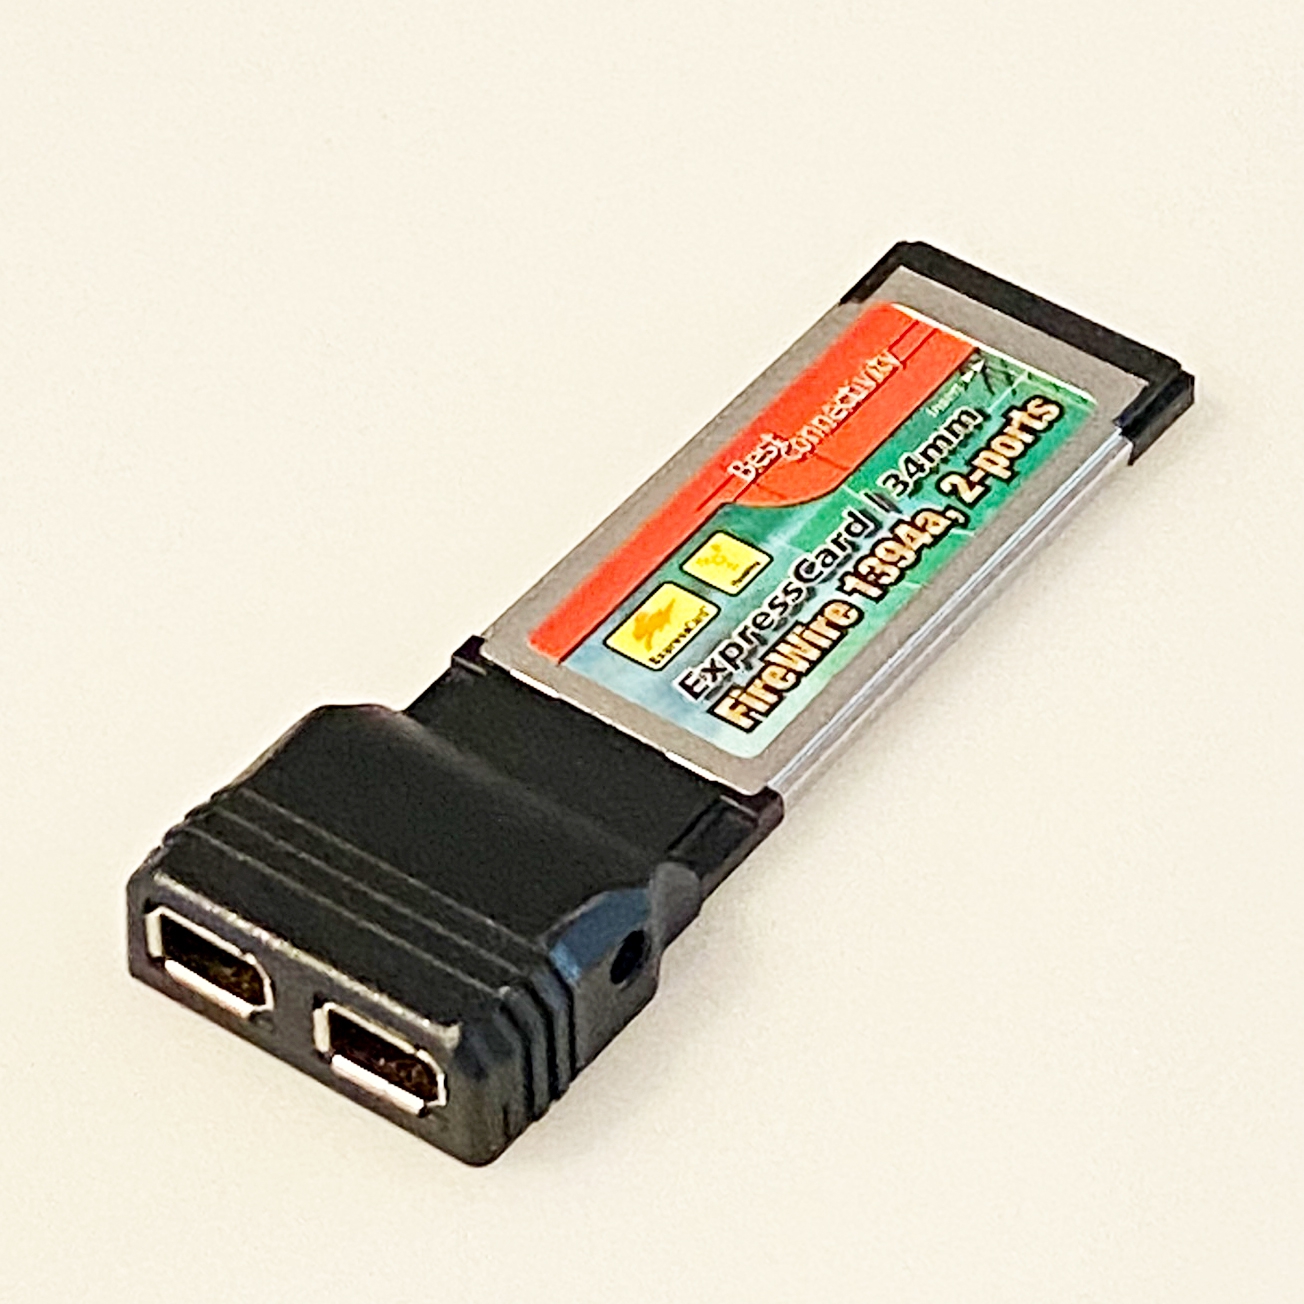 ExpressCard Firewire 400 mit Texas Instruments Chip XIO2200 34mm